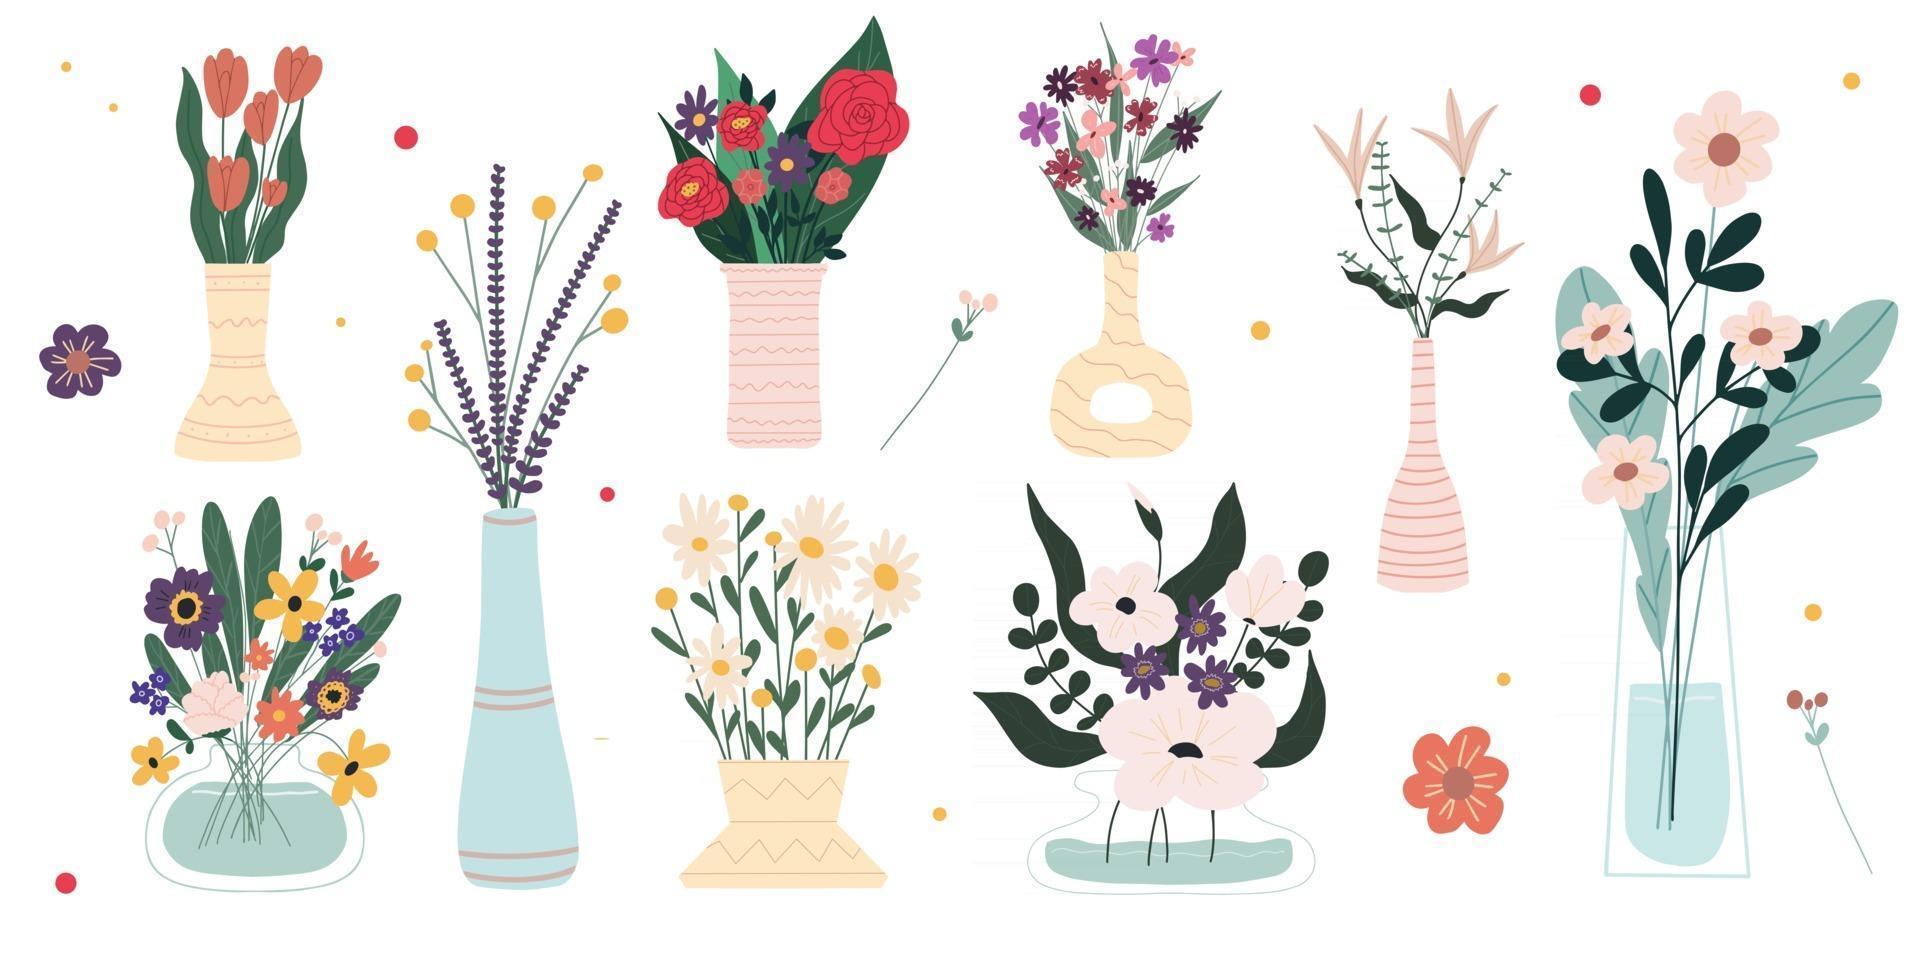 ensemble de fleurs printanières lumineuses dans des vases et des bouteilles isolés sur fond blanc un bouquet de bouquets ensemble d & # 39; éléments de design floral décoratif dessin animé illustration vectorielle plane vecteur